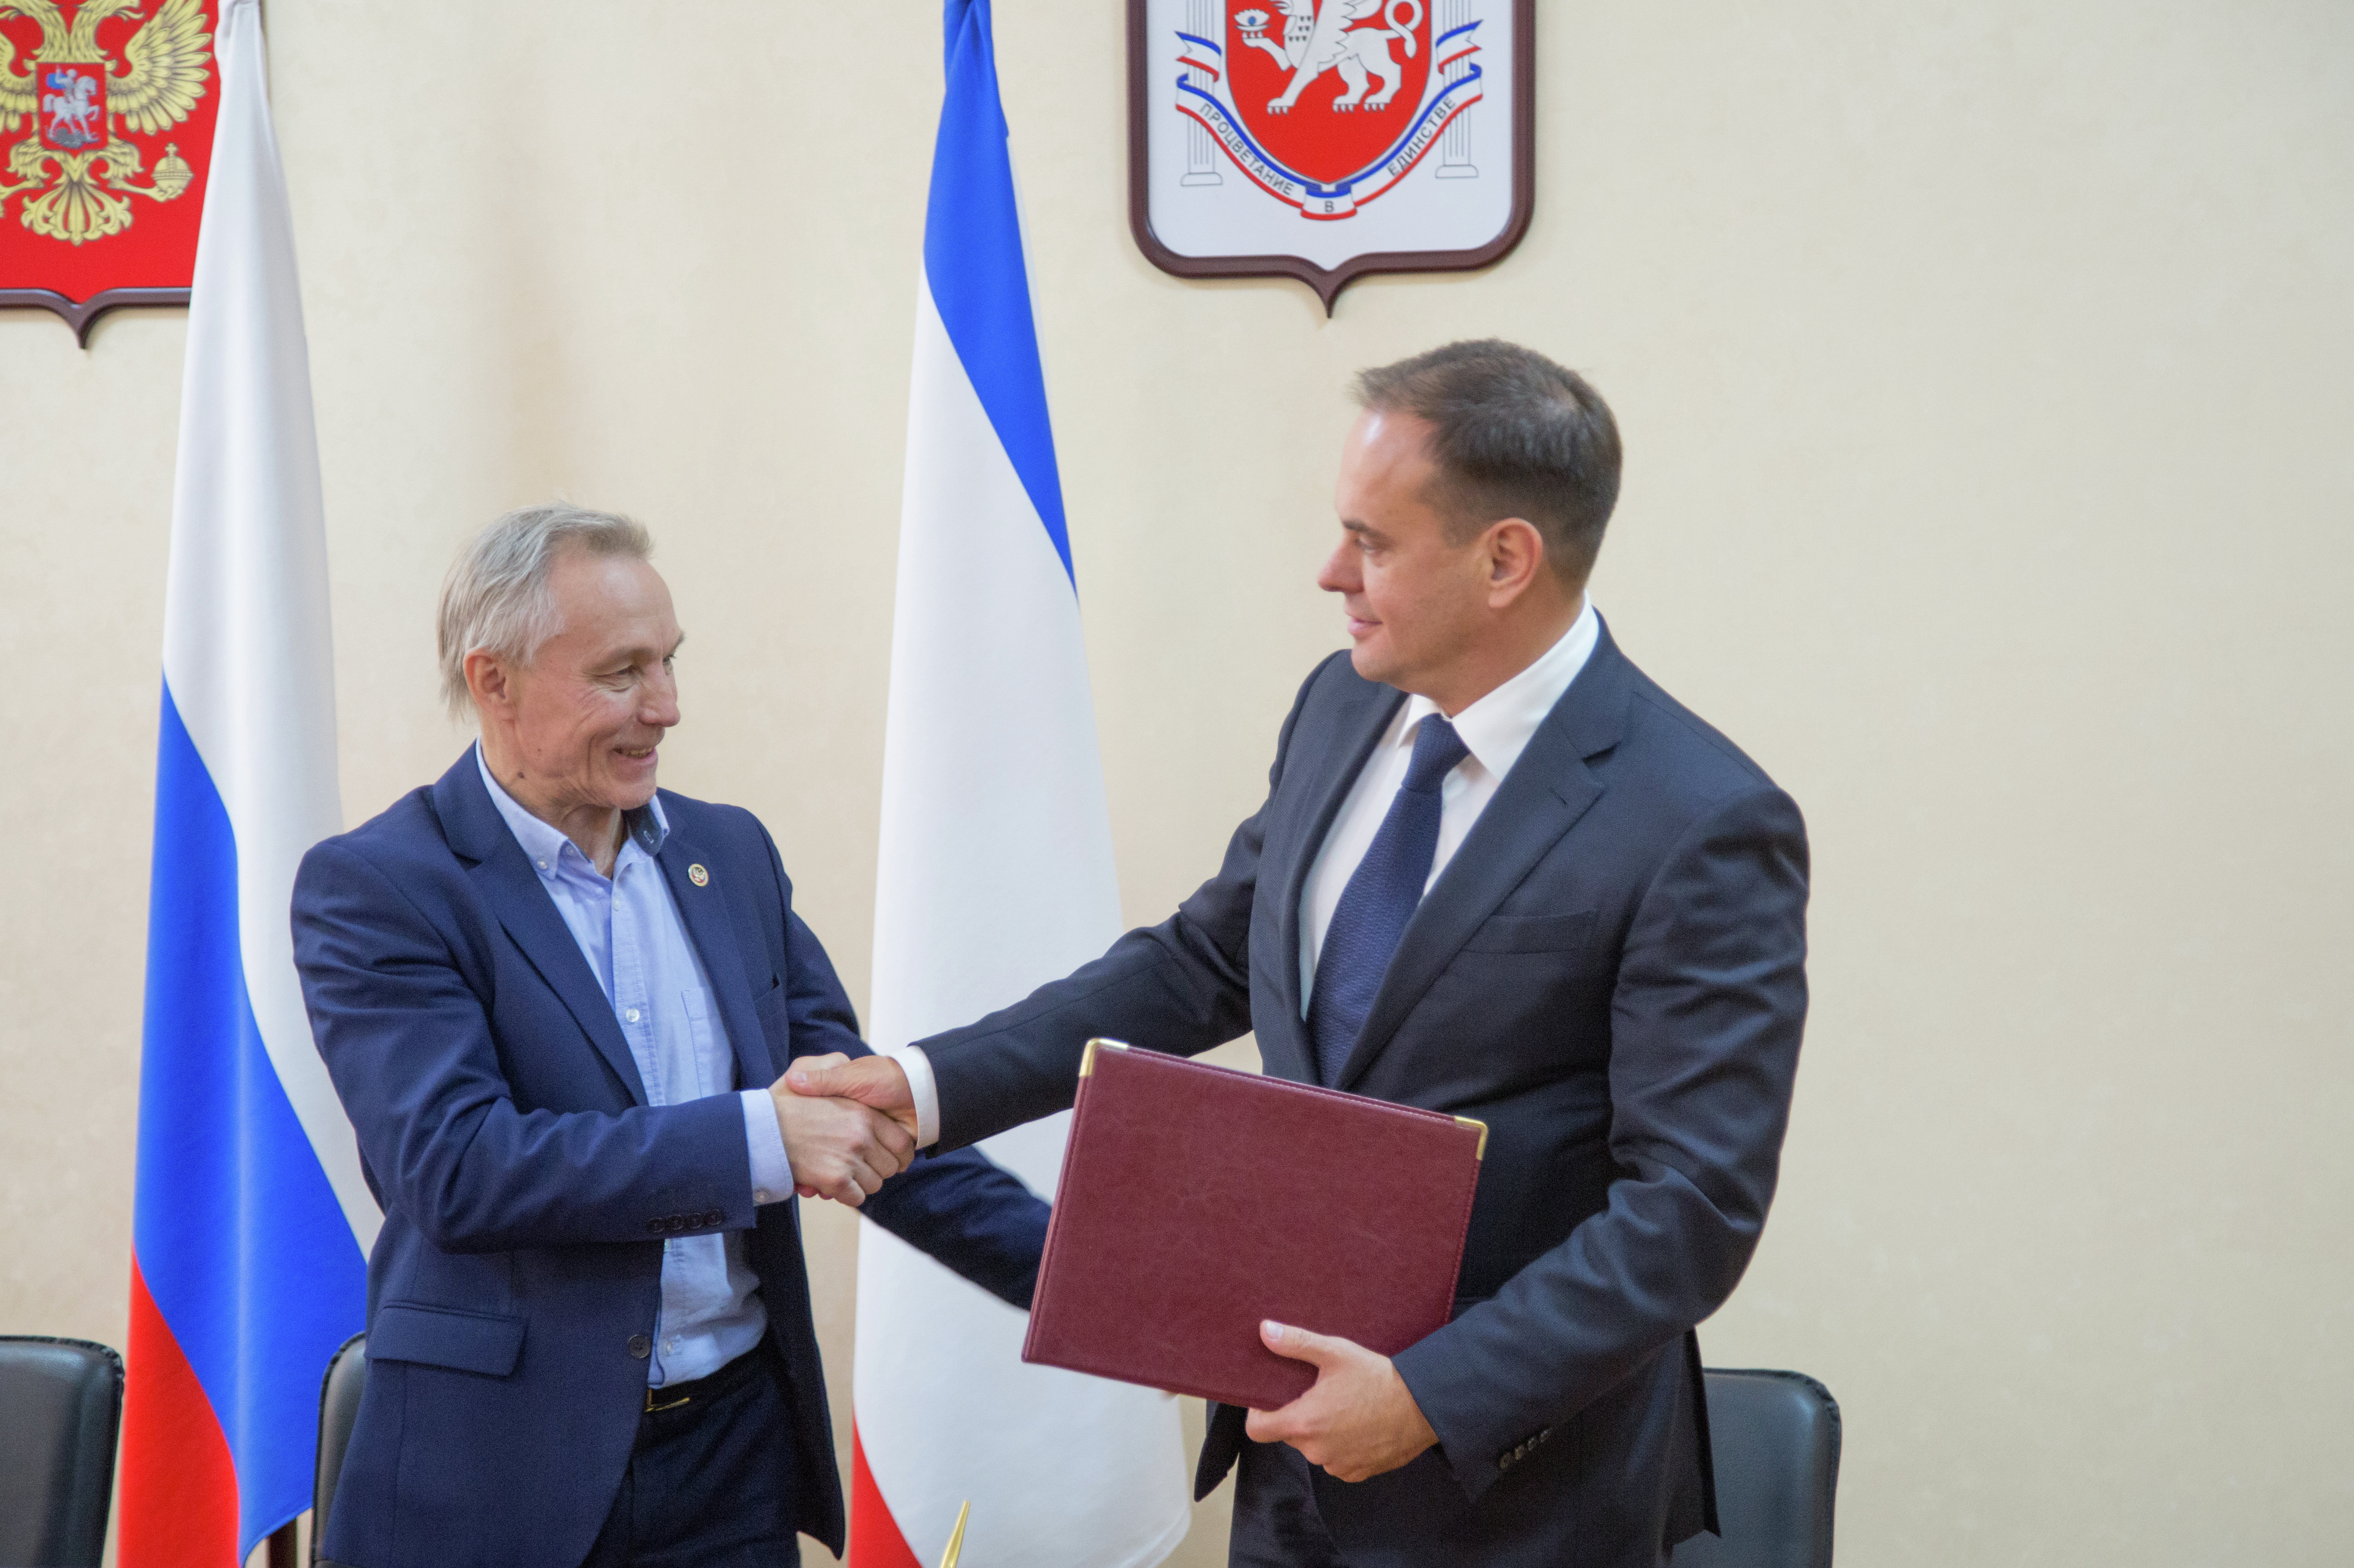 Подписание соглашения о сотрудничестве в туристической сфере между Республикой Крым и Донецкой Народной Республикой